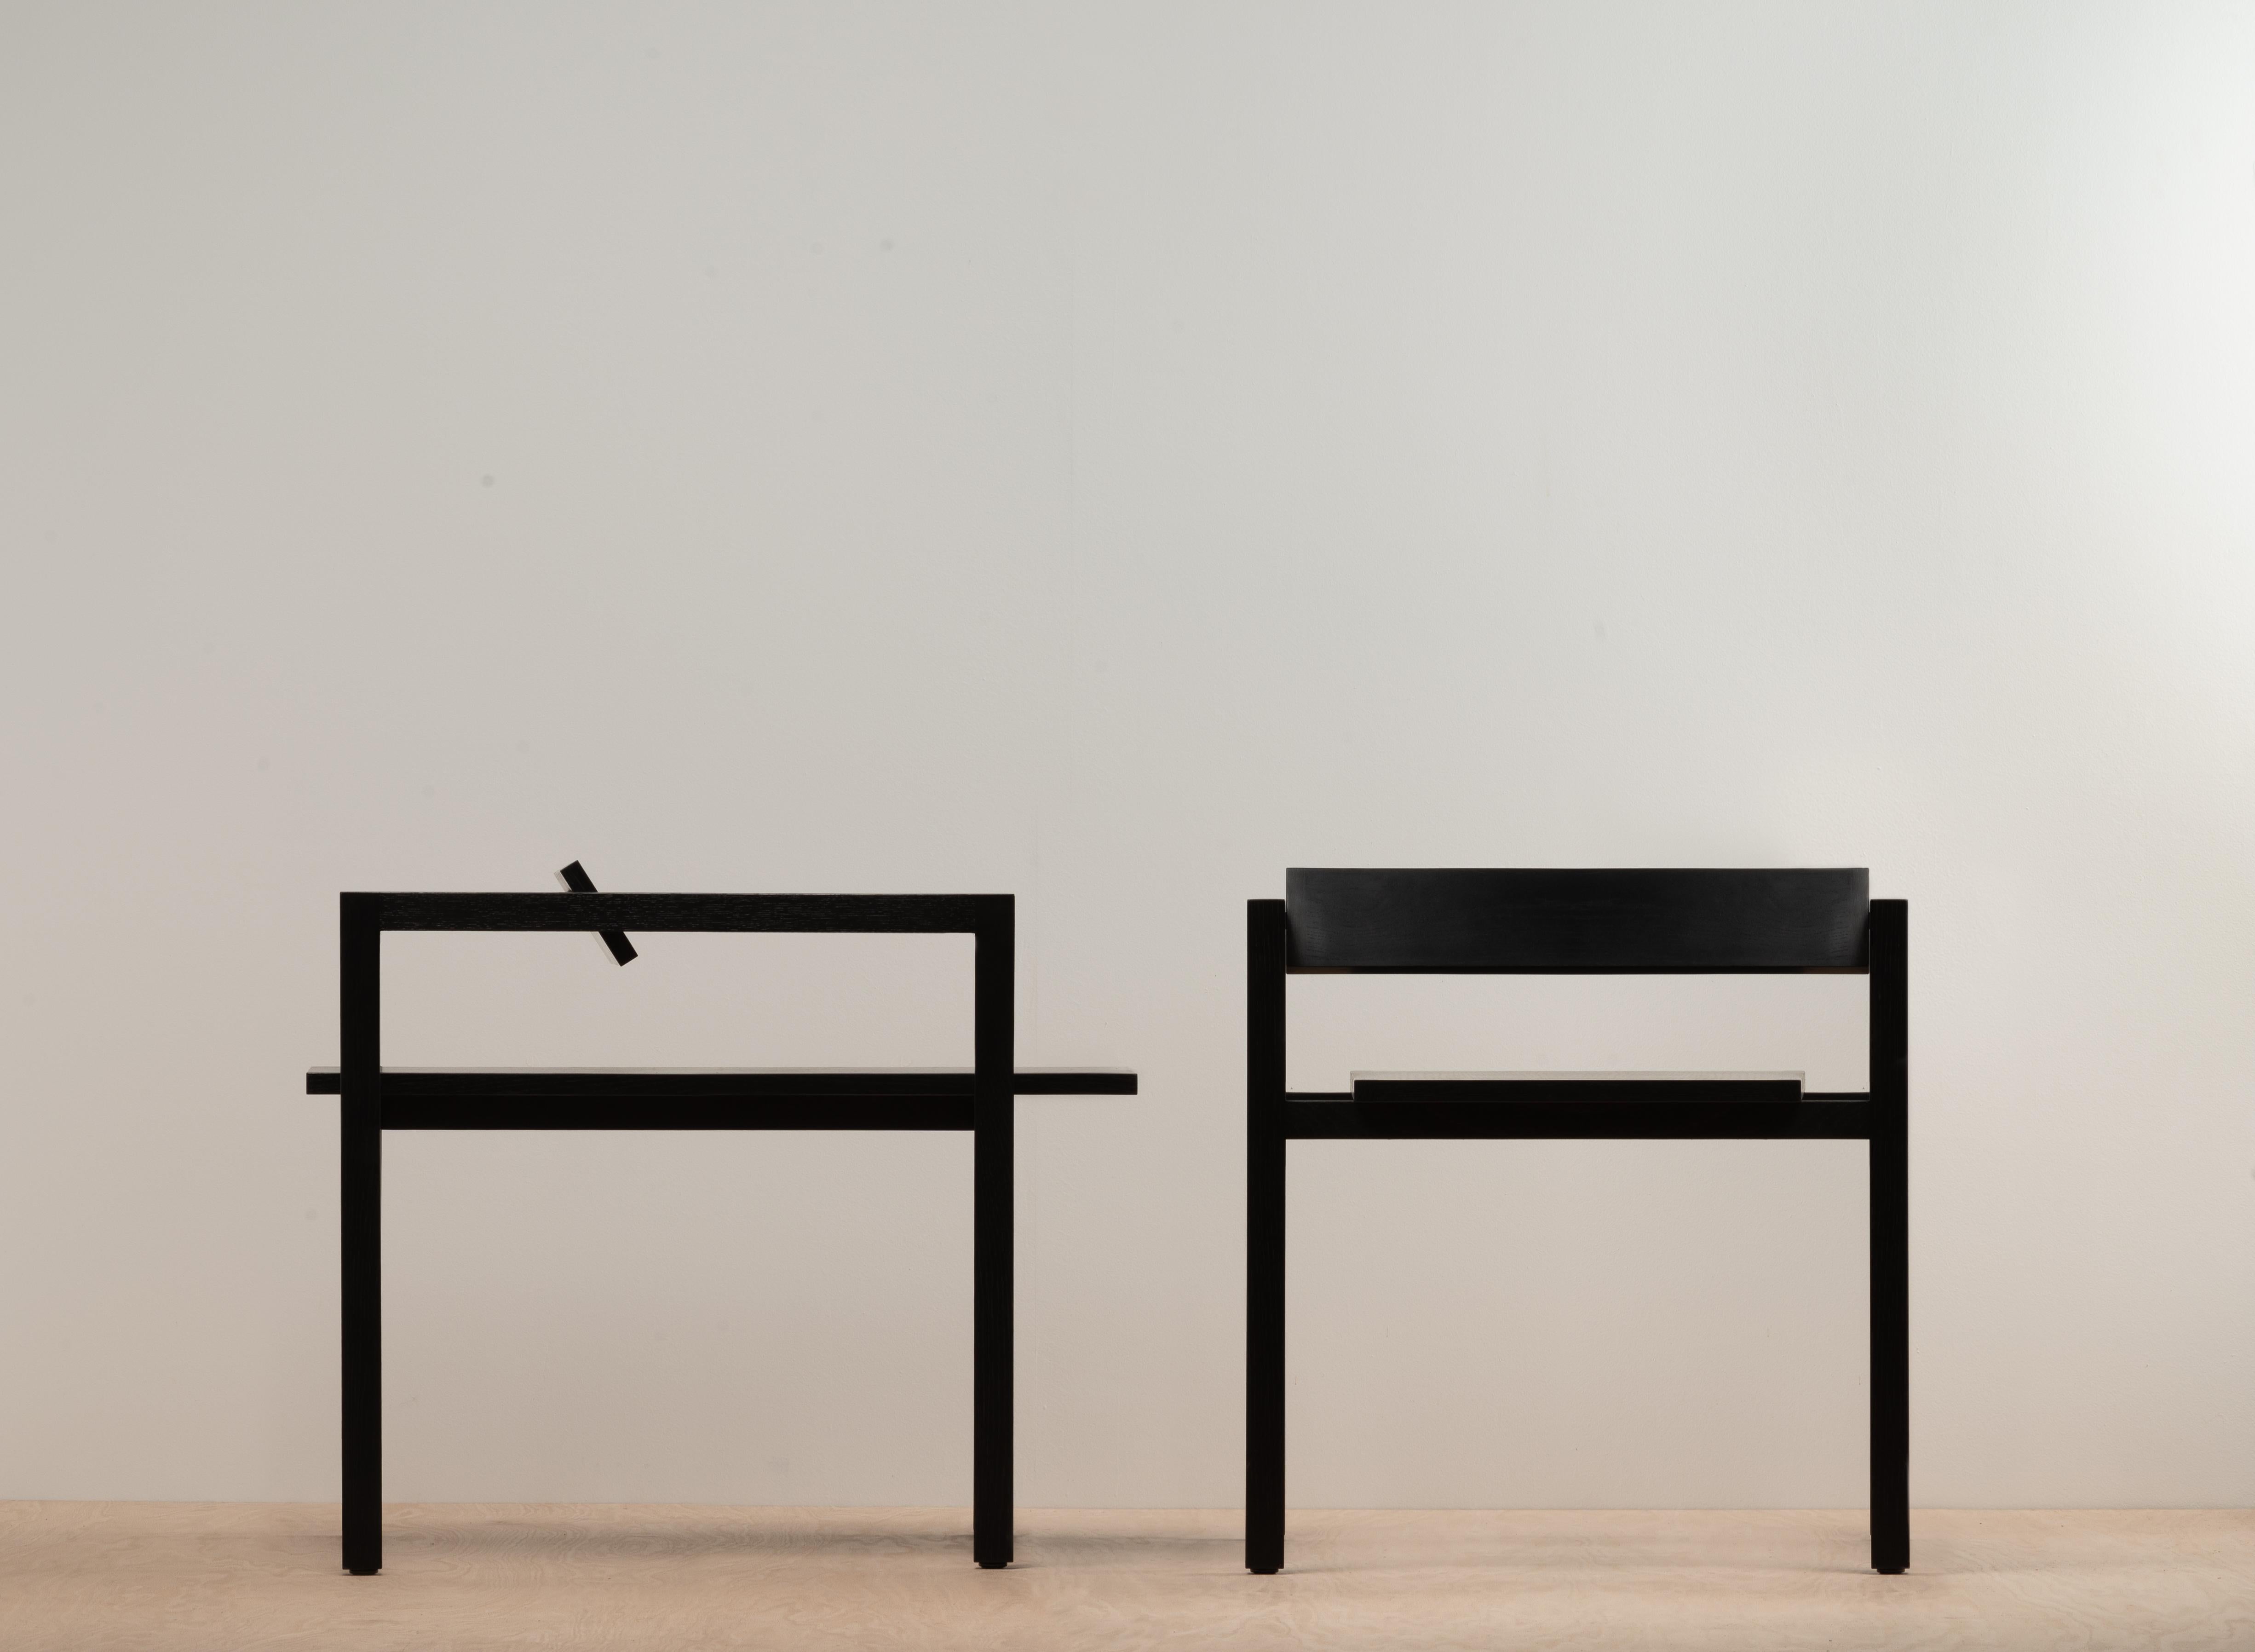 Box chair ist ein minimalistischer Beistellstuhl, der von dem kalifornischen Designer N. Bijan Pourfard entworfen wurde. Er betont die lineare Einfachheit und die 